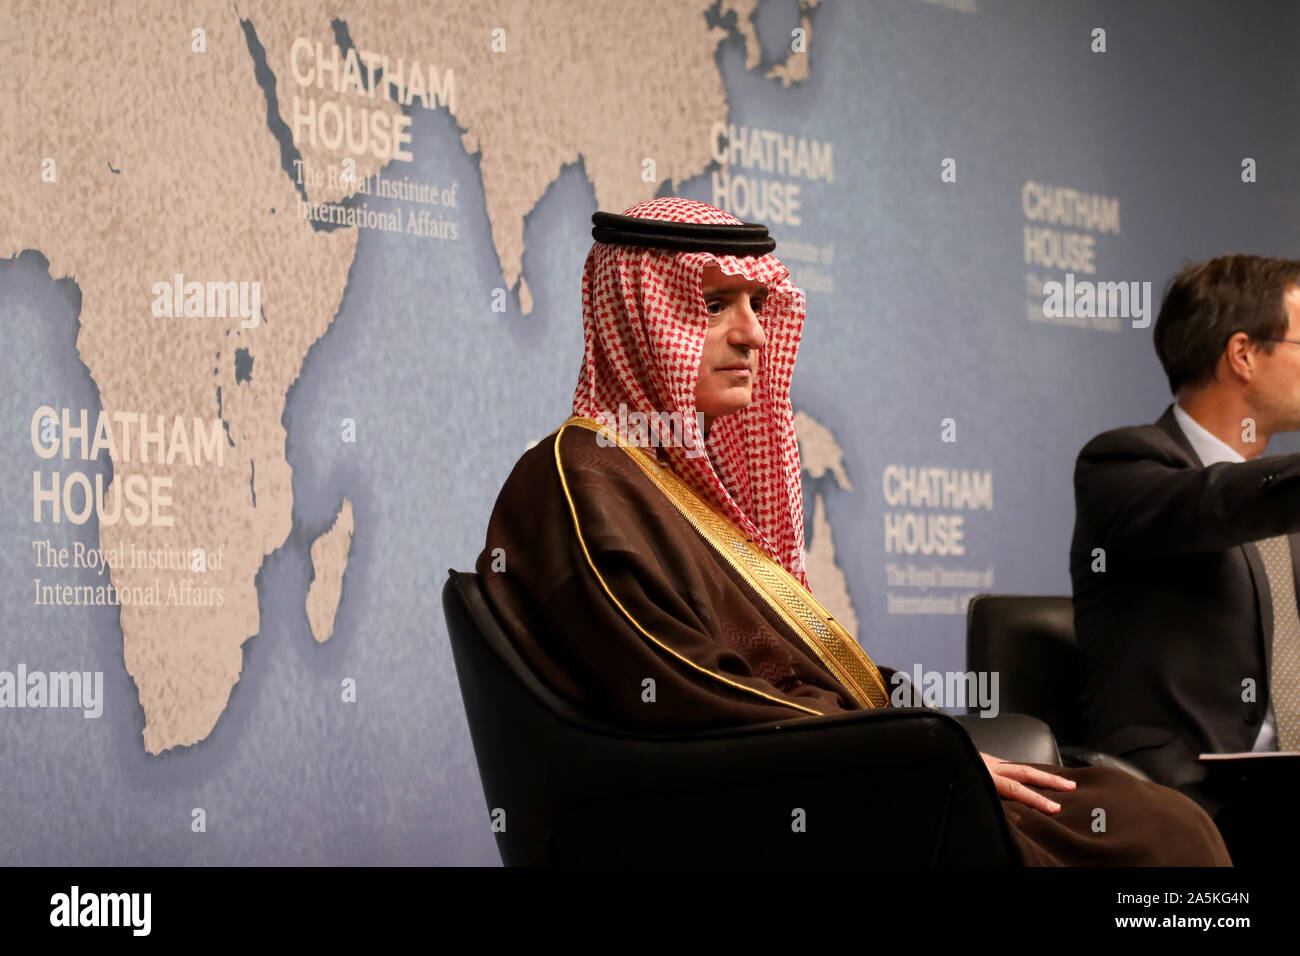 London/Großbritannien - 14. Oktober 2019: Adel al-Jubeir, Saudi Arabien der Staatsminister für auswärtige Angelegenheiten, sprechen im Chatham House auf Saudische Außenpolitik Stockfoto